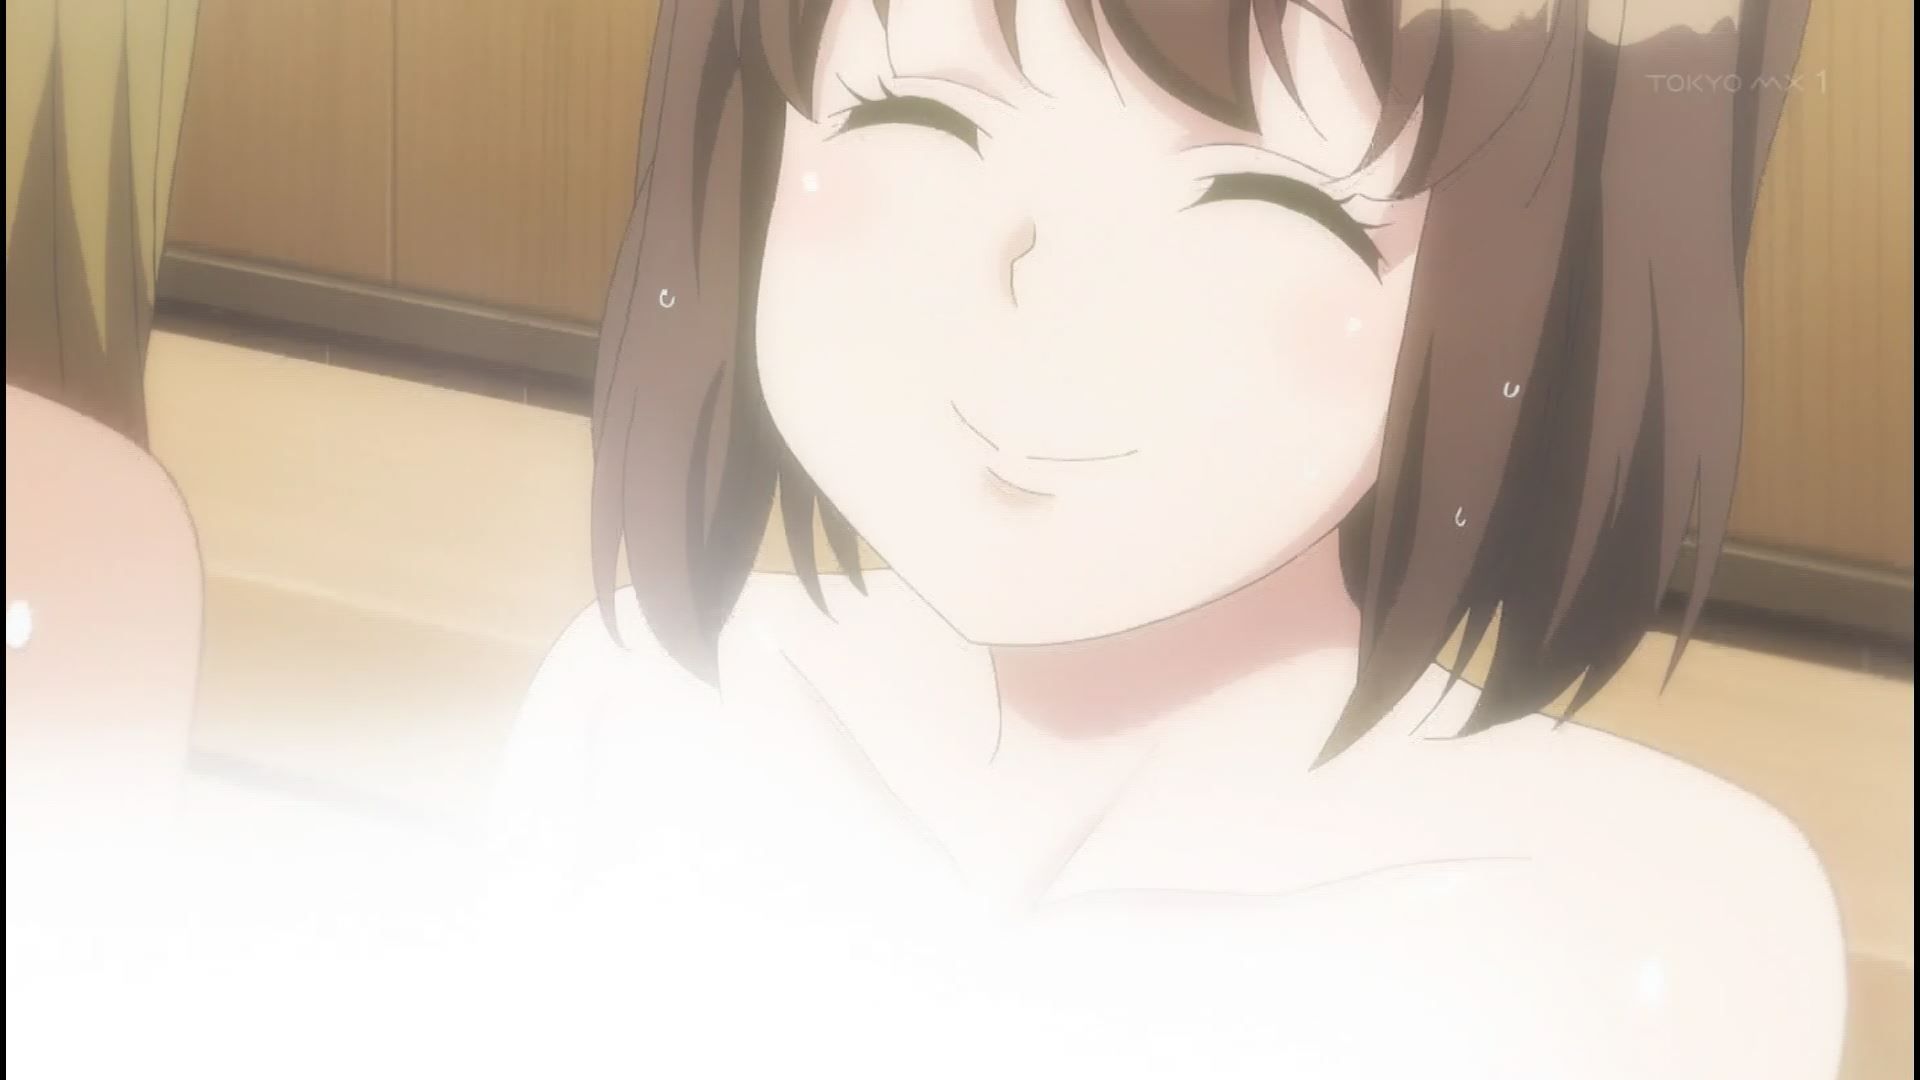 Anime [Kandagawa JETGIRLS] 8 episodes of girls erotic round-view bath bathing scene! 7